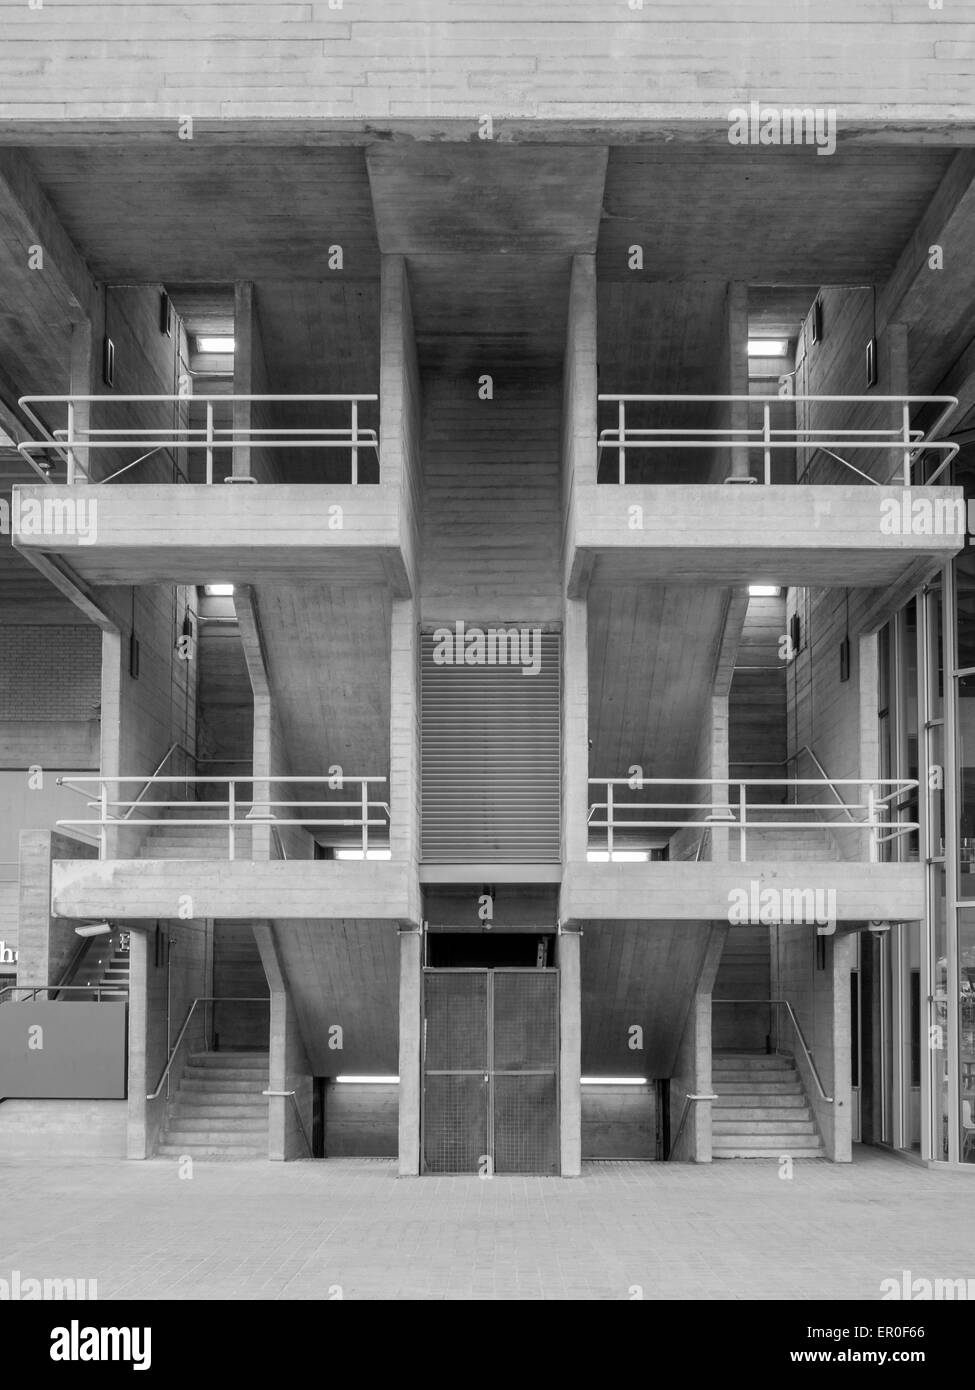 Escaliers du bâtiment en noir et blanc Banque D'Images